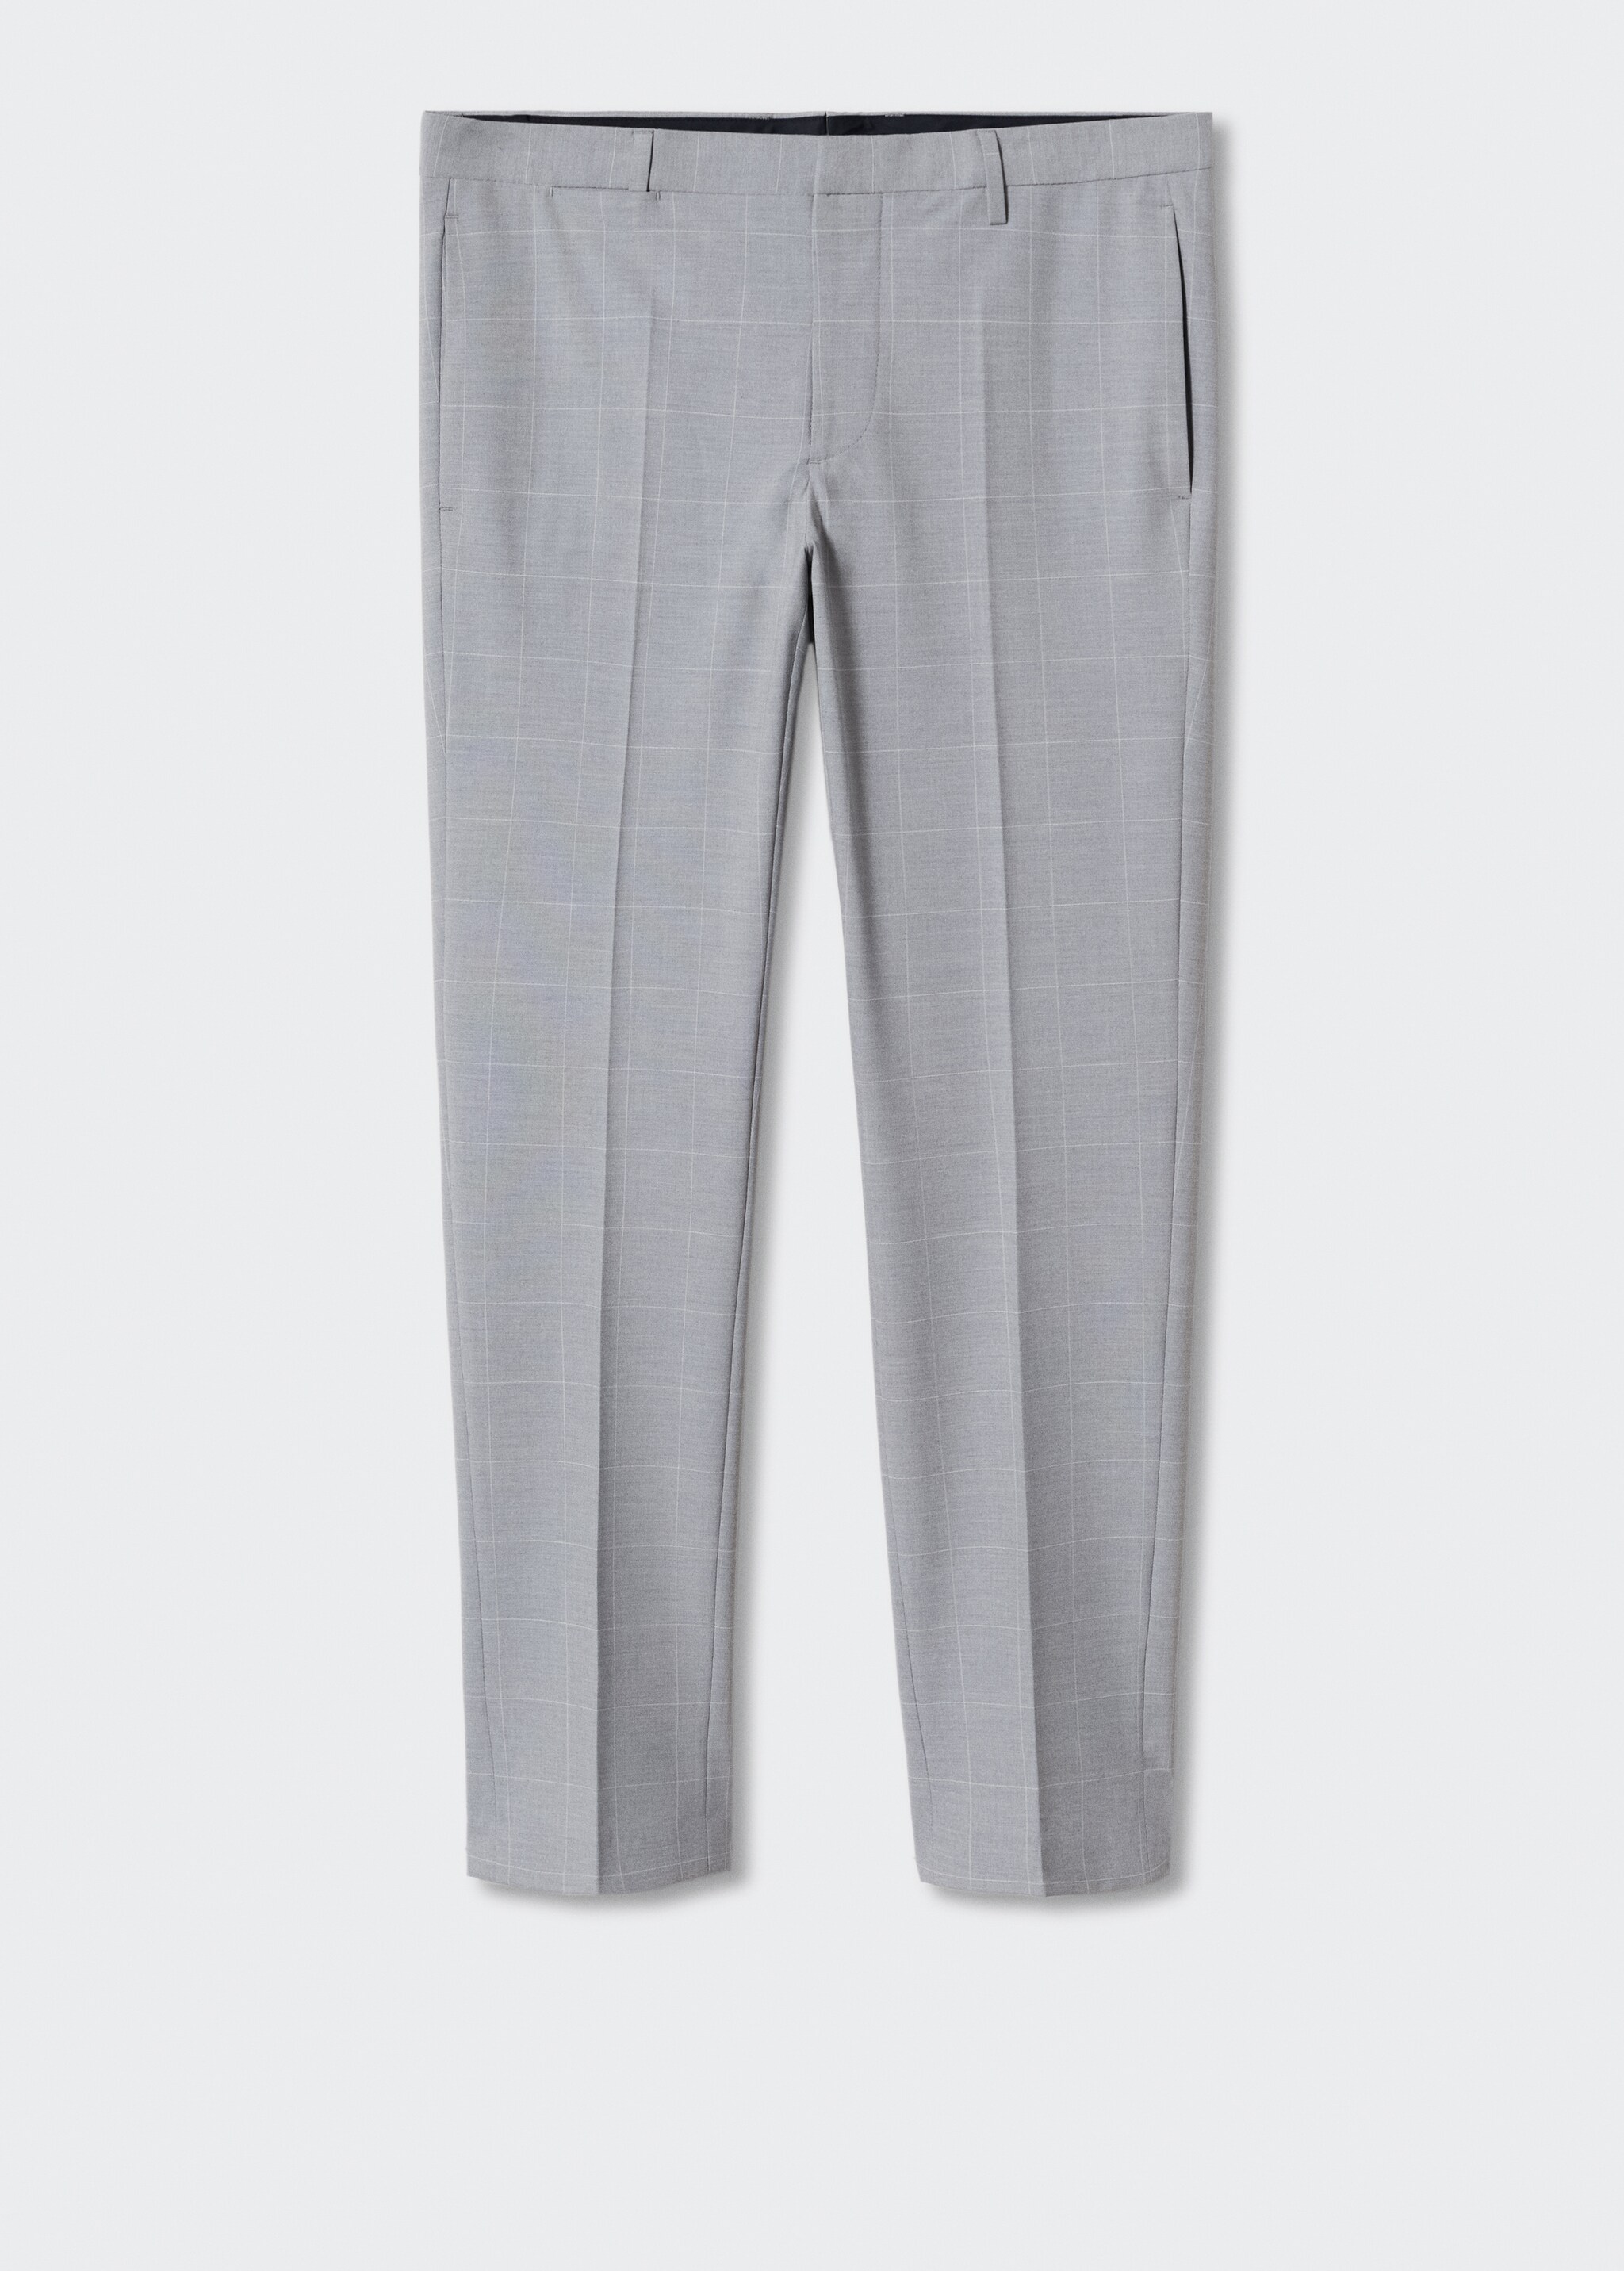 Pantalons vestit súper slim fit quadres - Article sense model